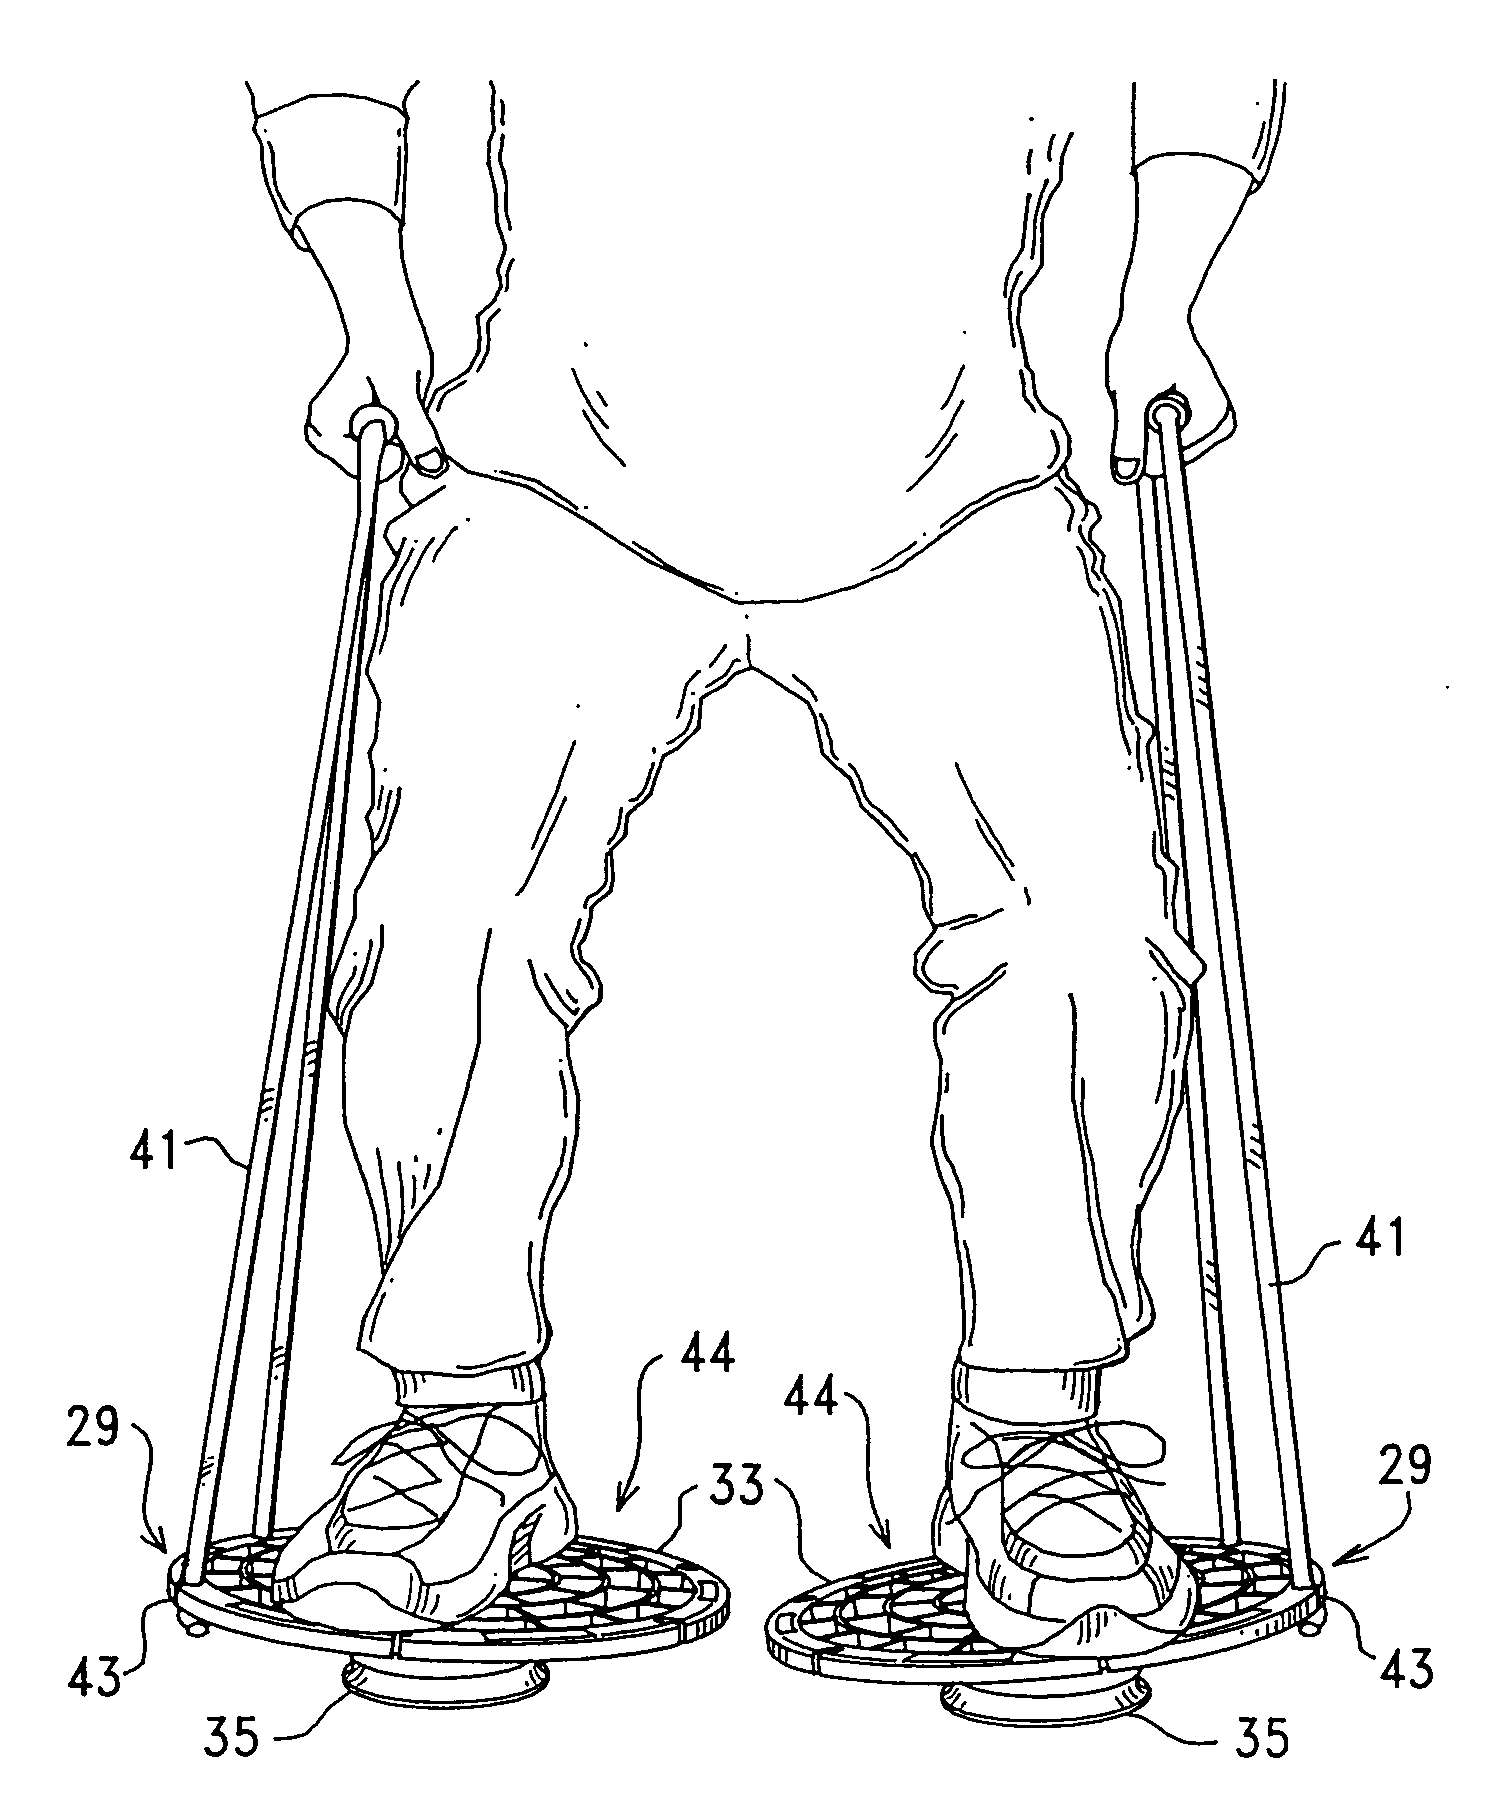 Adaptable body conditioning apparatus